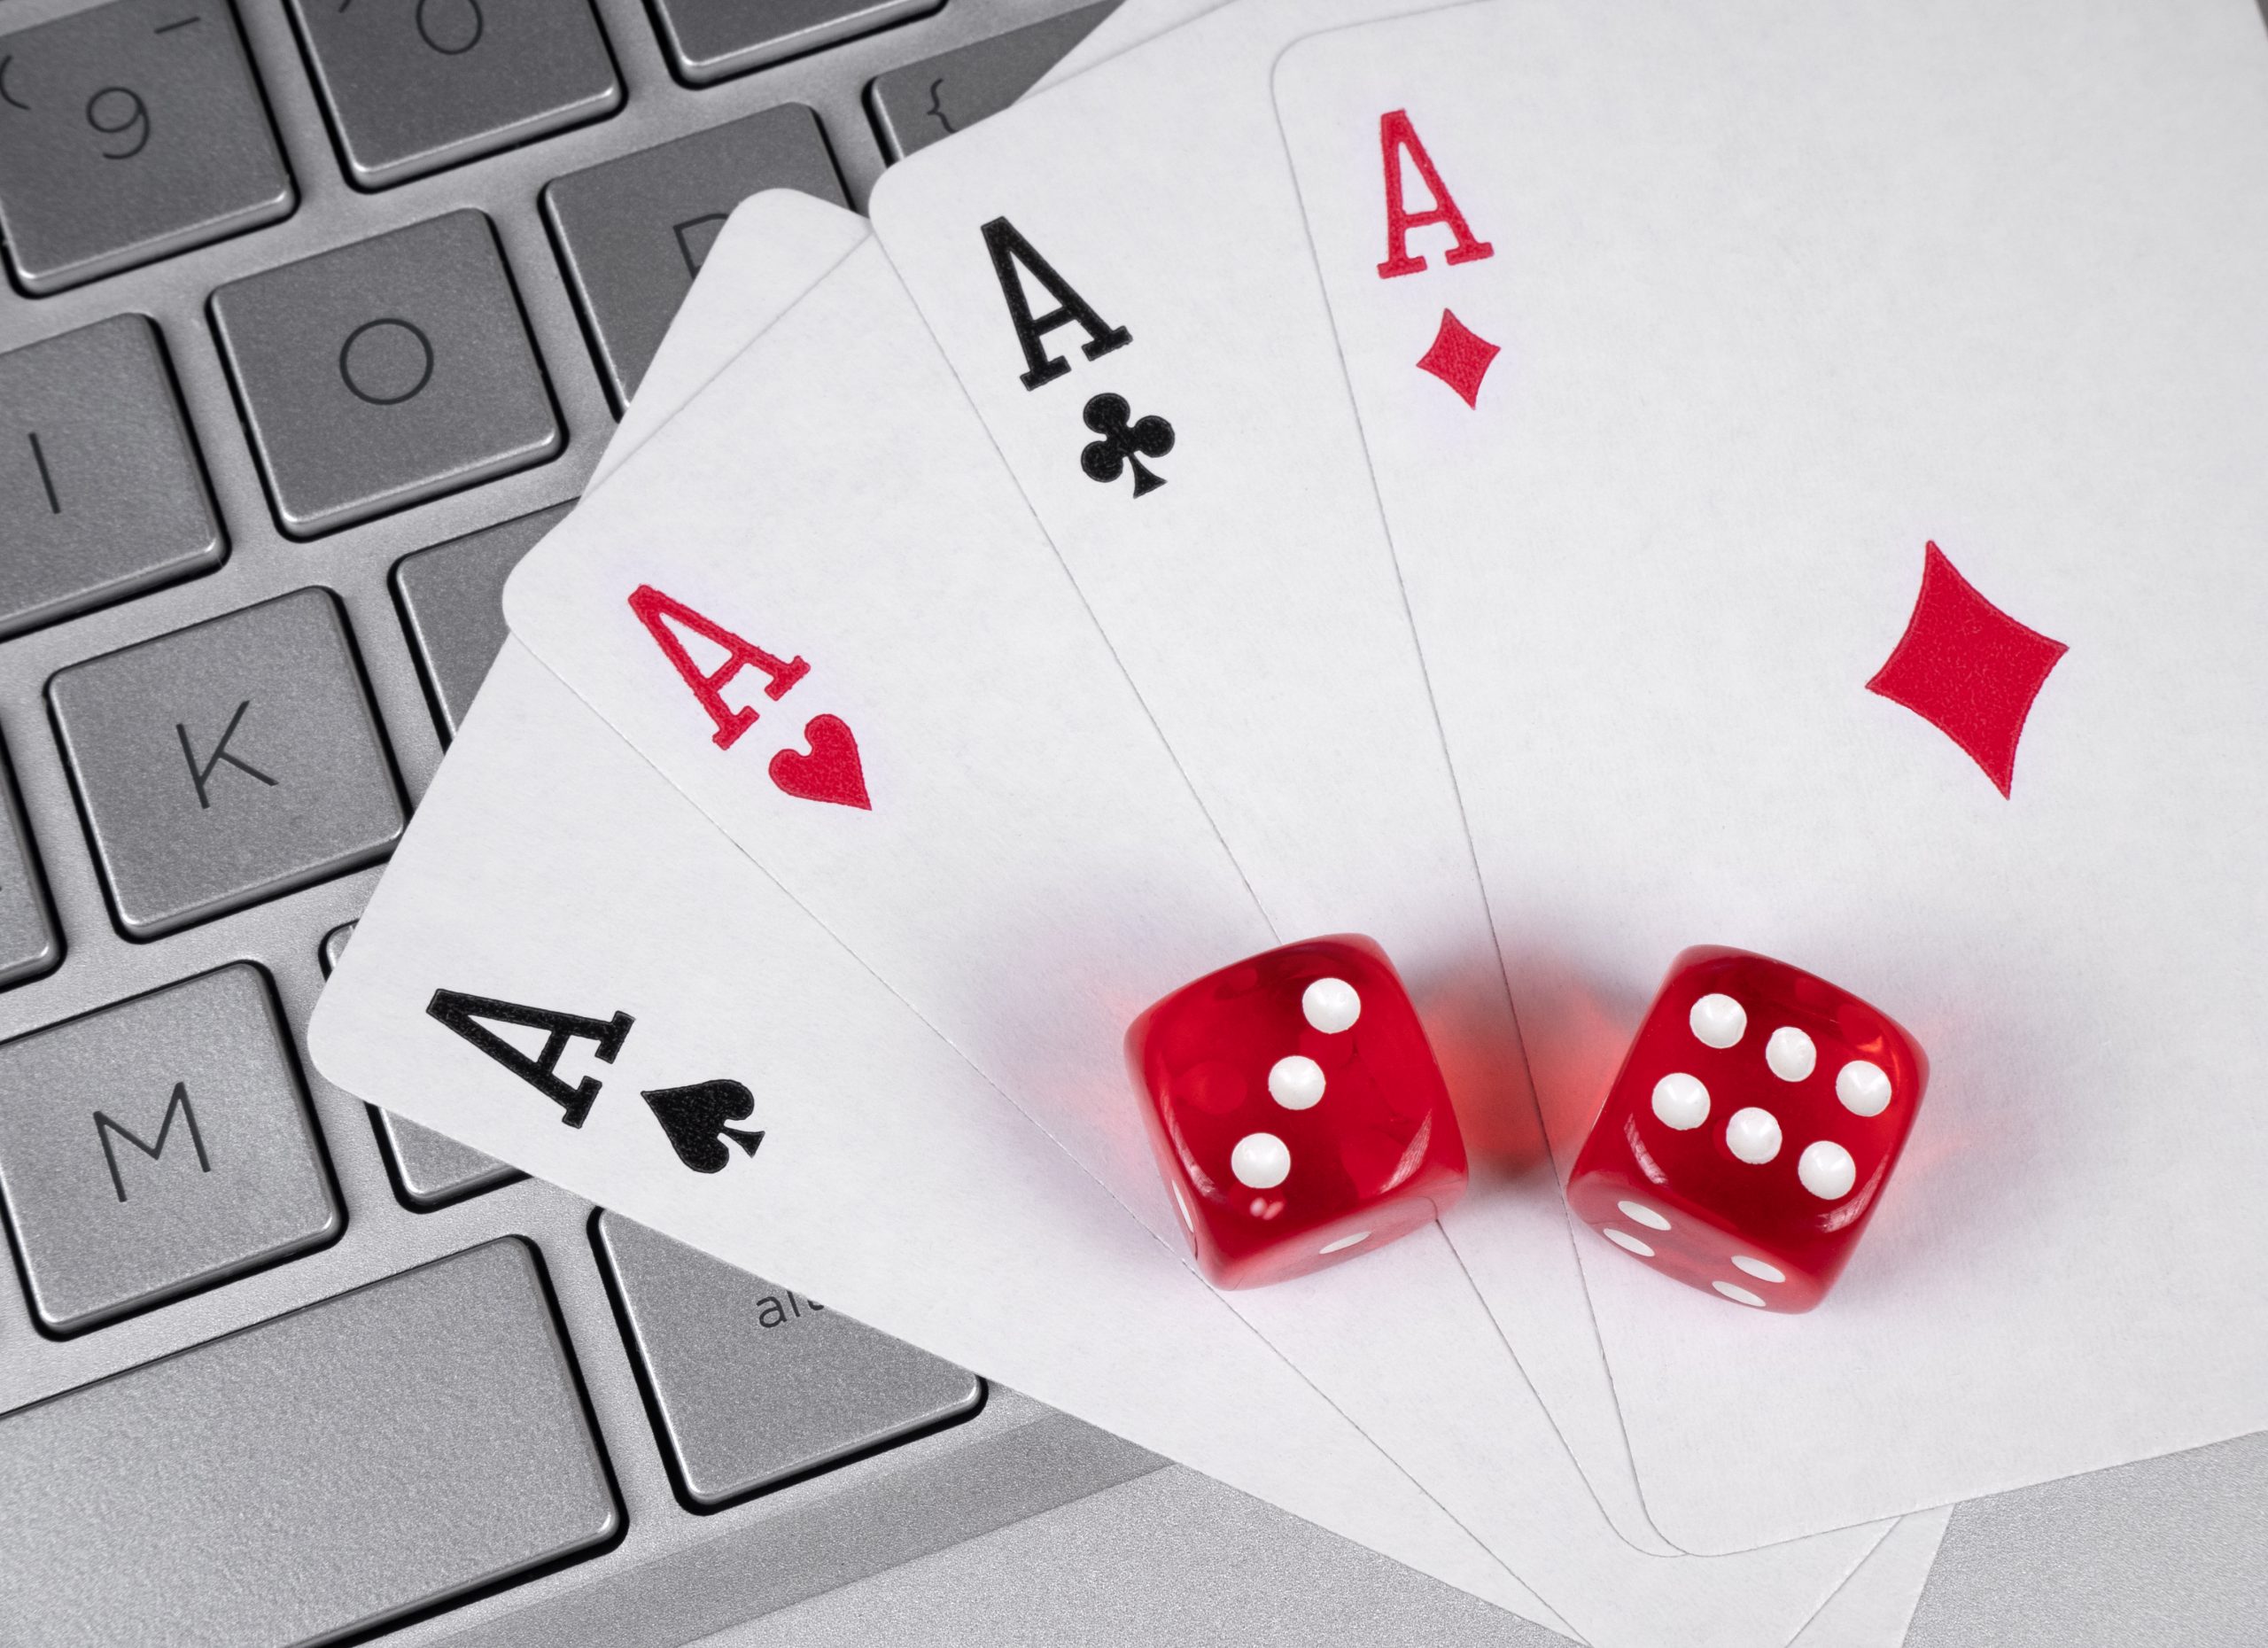 Casino en ligne : quels sont les obligations réglementaires ?